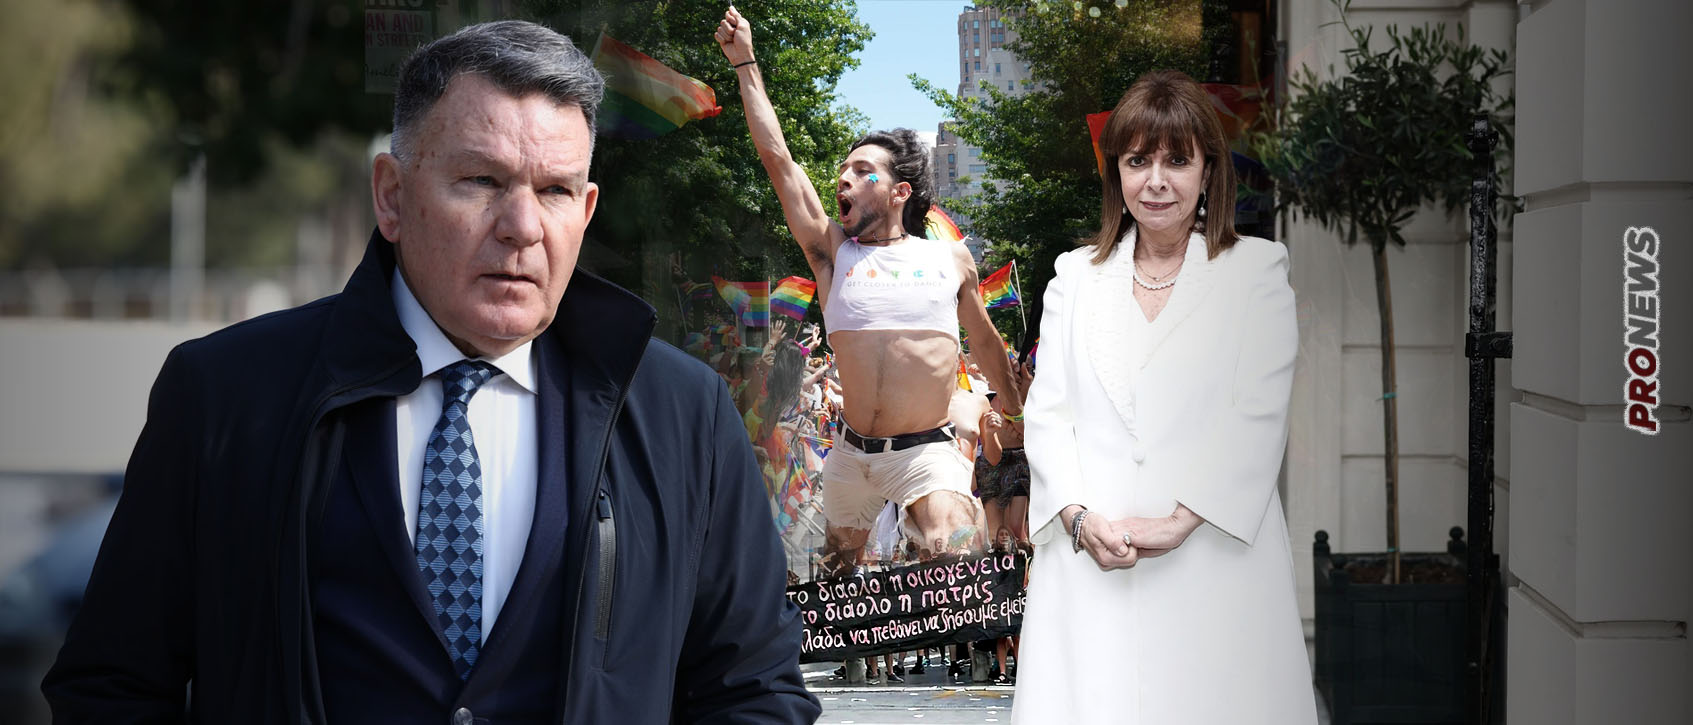 Ο Α.Κούγιας αποδομεί την ΠτΔ Κ.Σακελλαροπούλου με σφοδρή επίθεση για την υποστήριξή της στο ν/σ-έκτρωμα γάμου και υιοθεσίας ανηλίκων από ΛΟΑΤΚΙ+